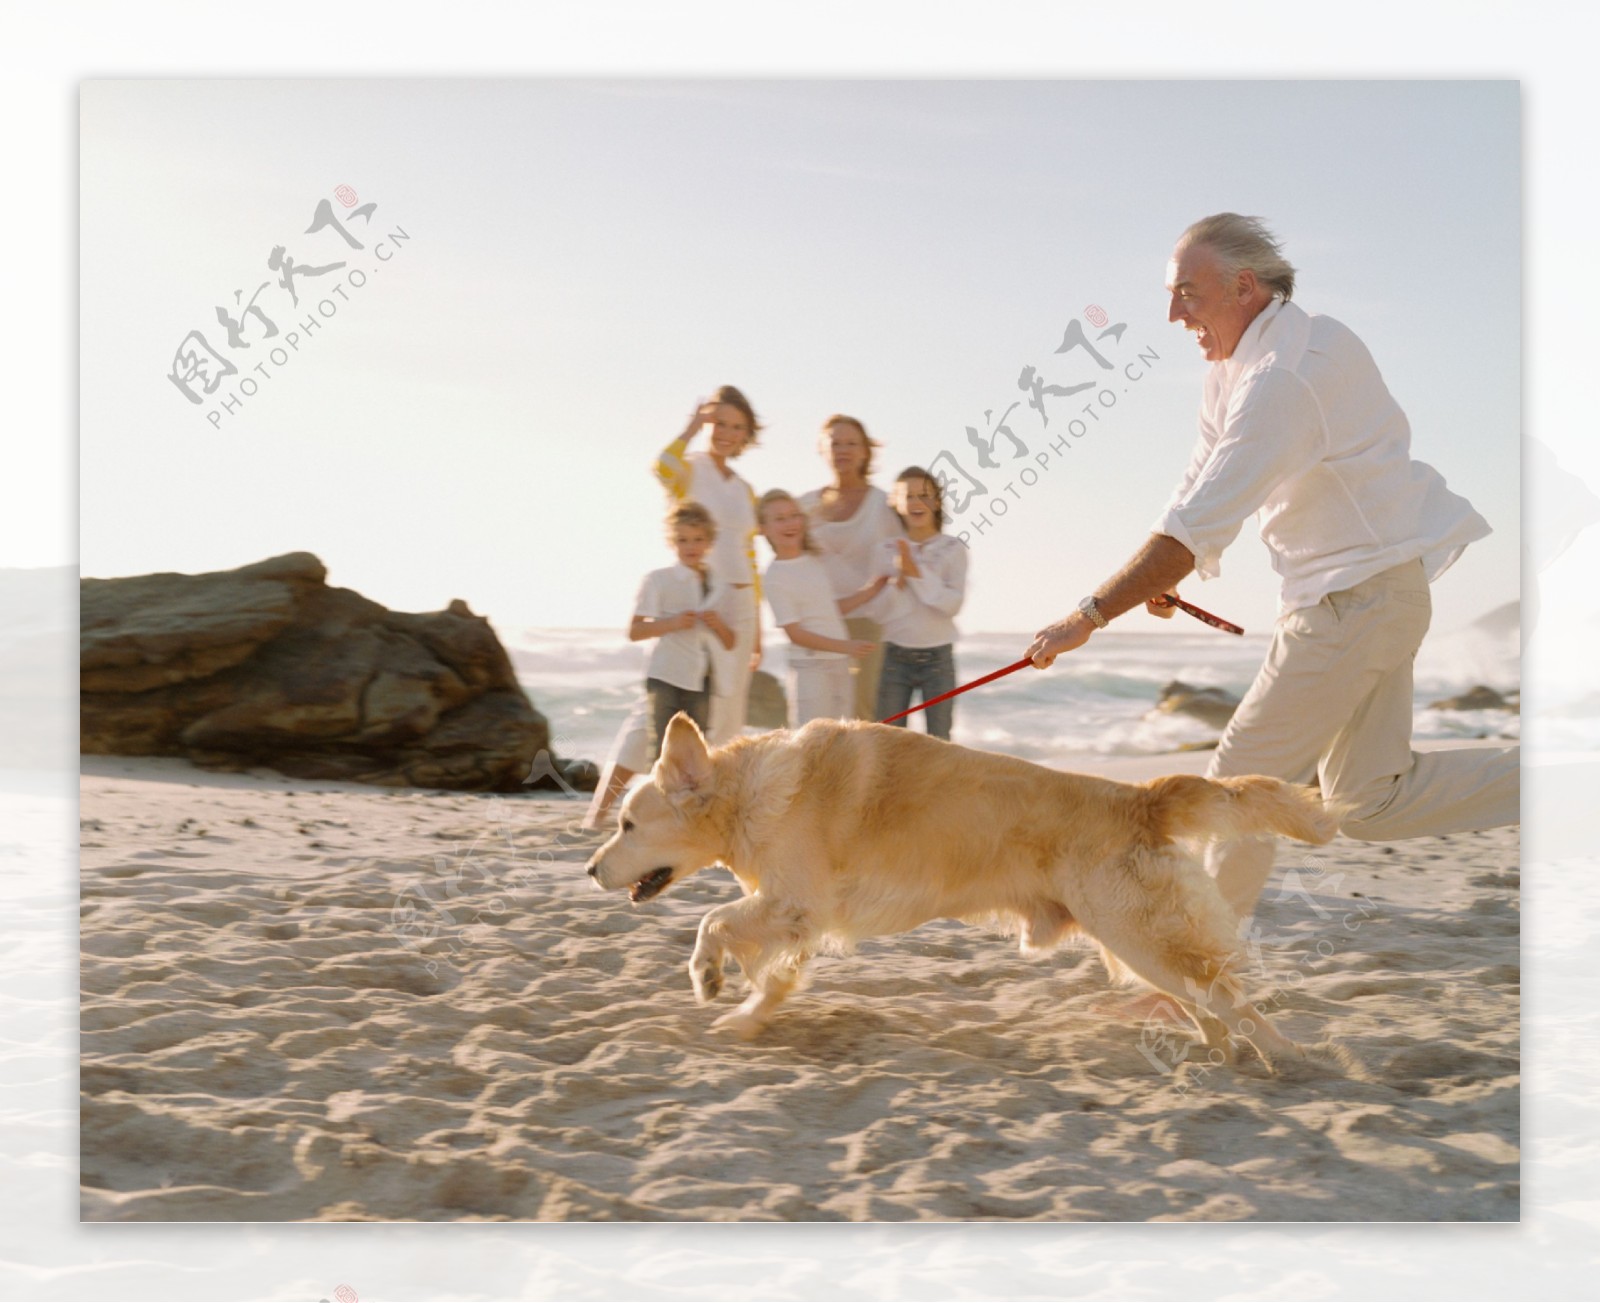 沙滩上开心快乐一家人图片